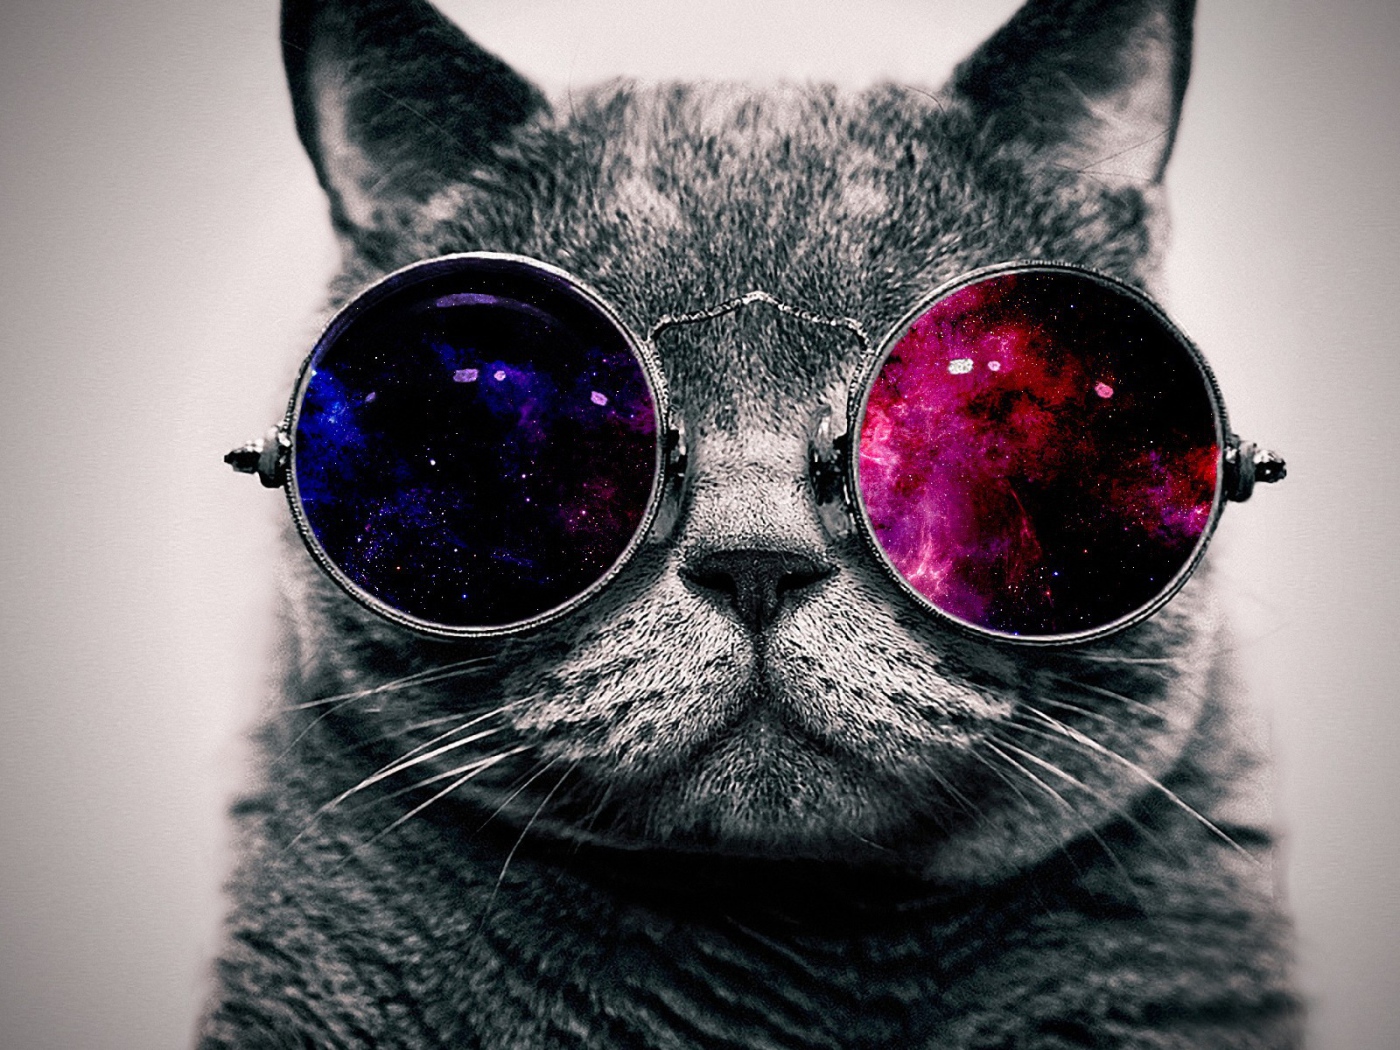 Кот в цветных очках